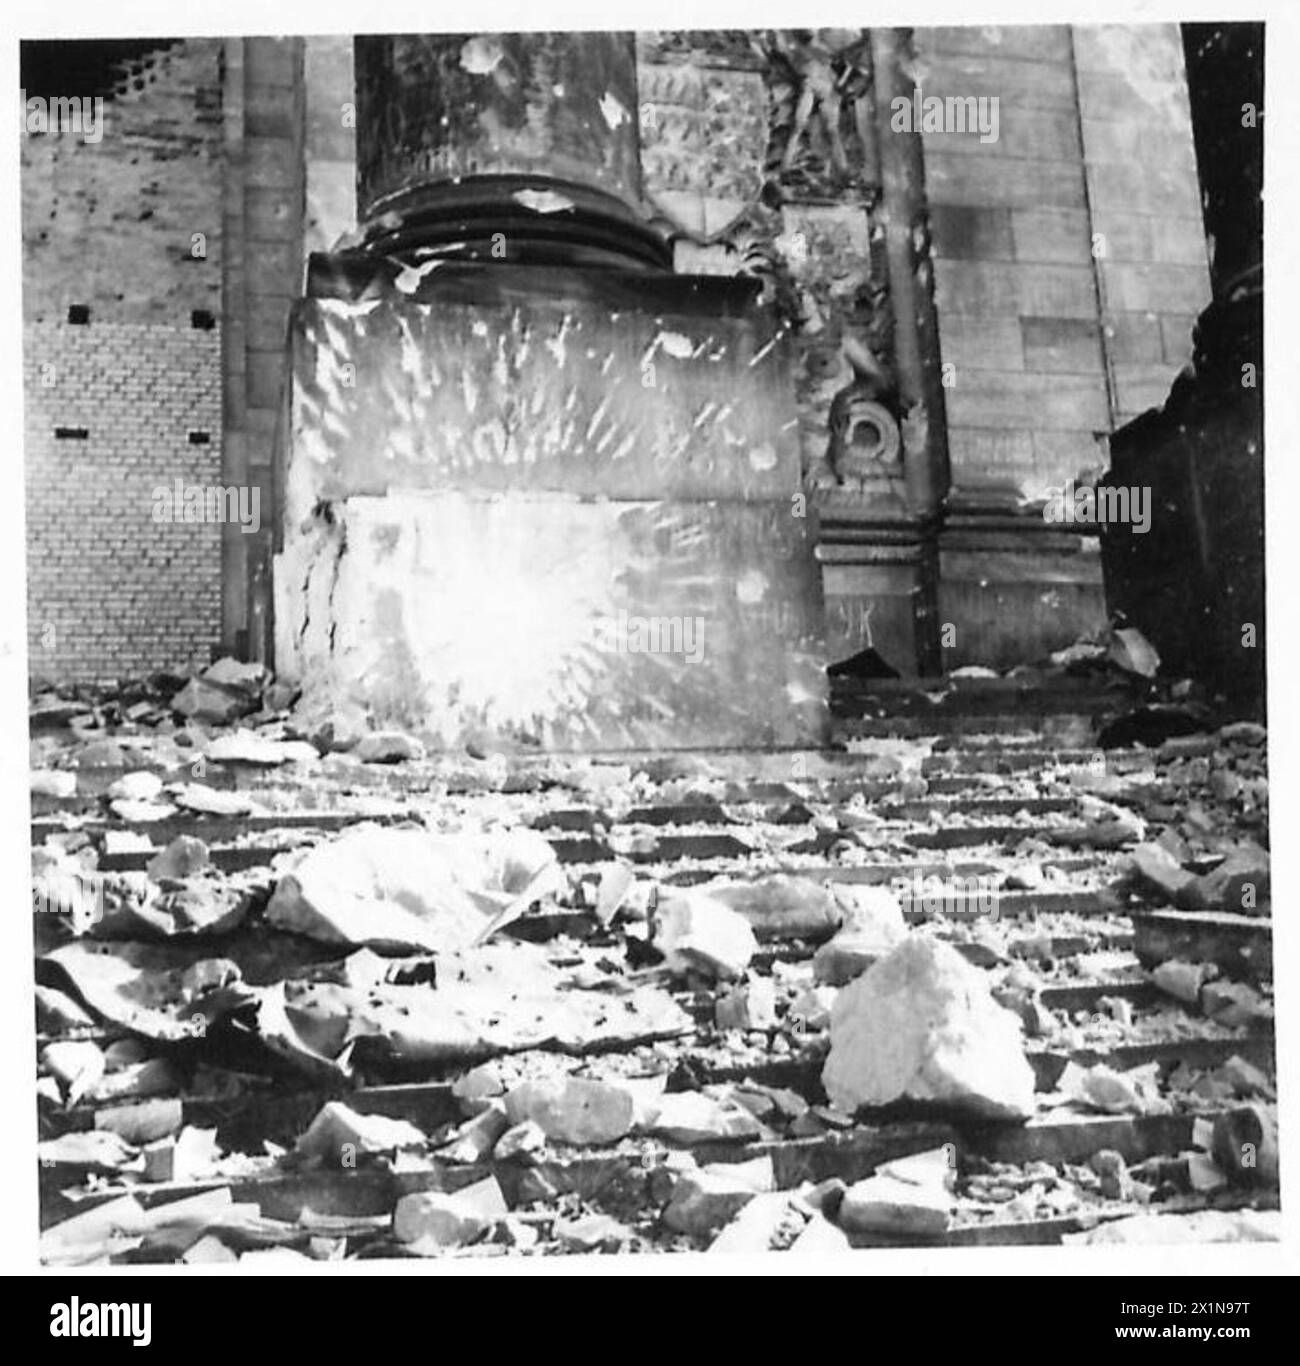 SCENE A BERLINO - Una serie di fotografie scattate a Berlino che mostrano scene nella città devastata e sfollati in uno dei campi di transito. Foto scattate per artisti di guerra - Captain Long, South African War Artist, e Miss Mary Kessell, British War Artist, British Army of the Rhine Foto Stock